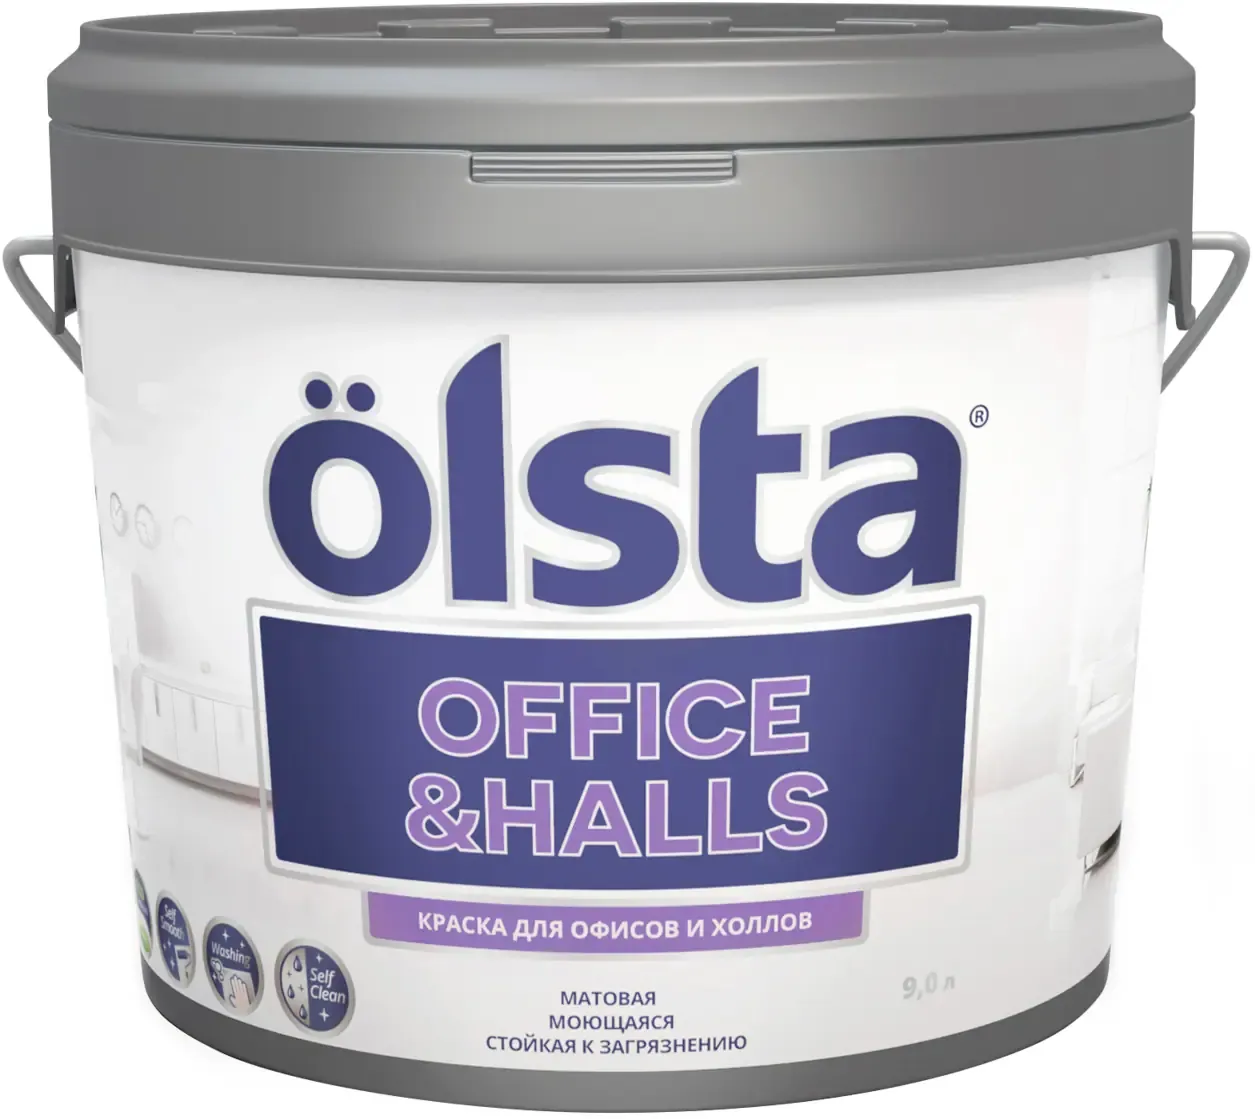 Краска для офисов и холлов Olsta Office & Halls 9 л нежная сиреневая вуаль база A №128A Haze шелковисто матовая 01